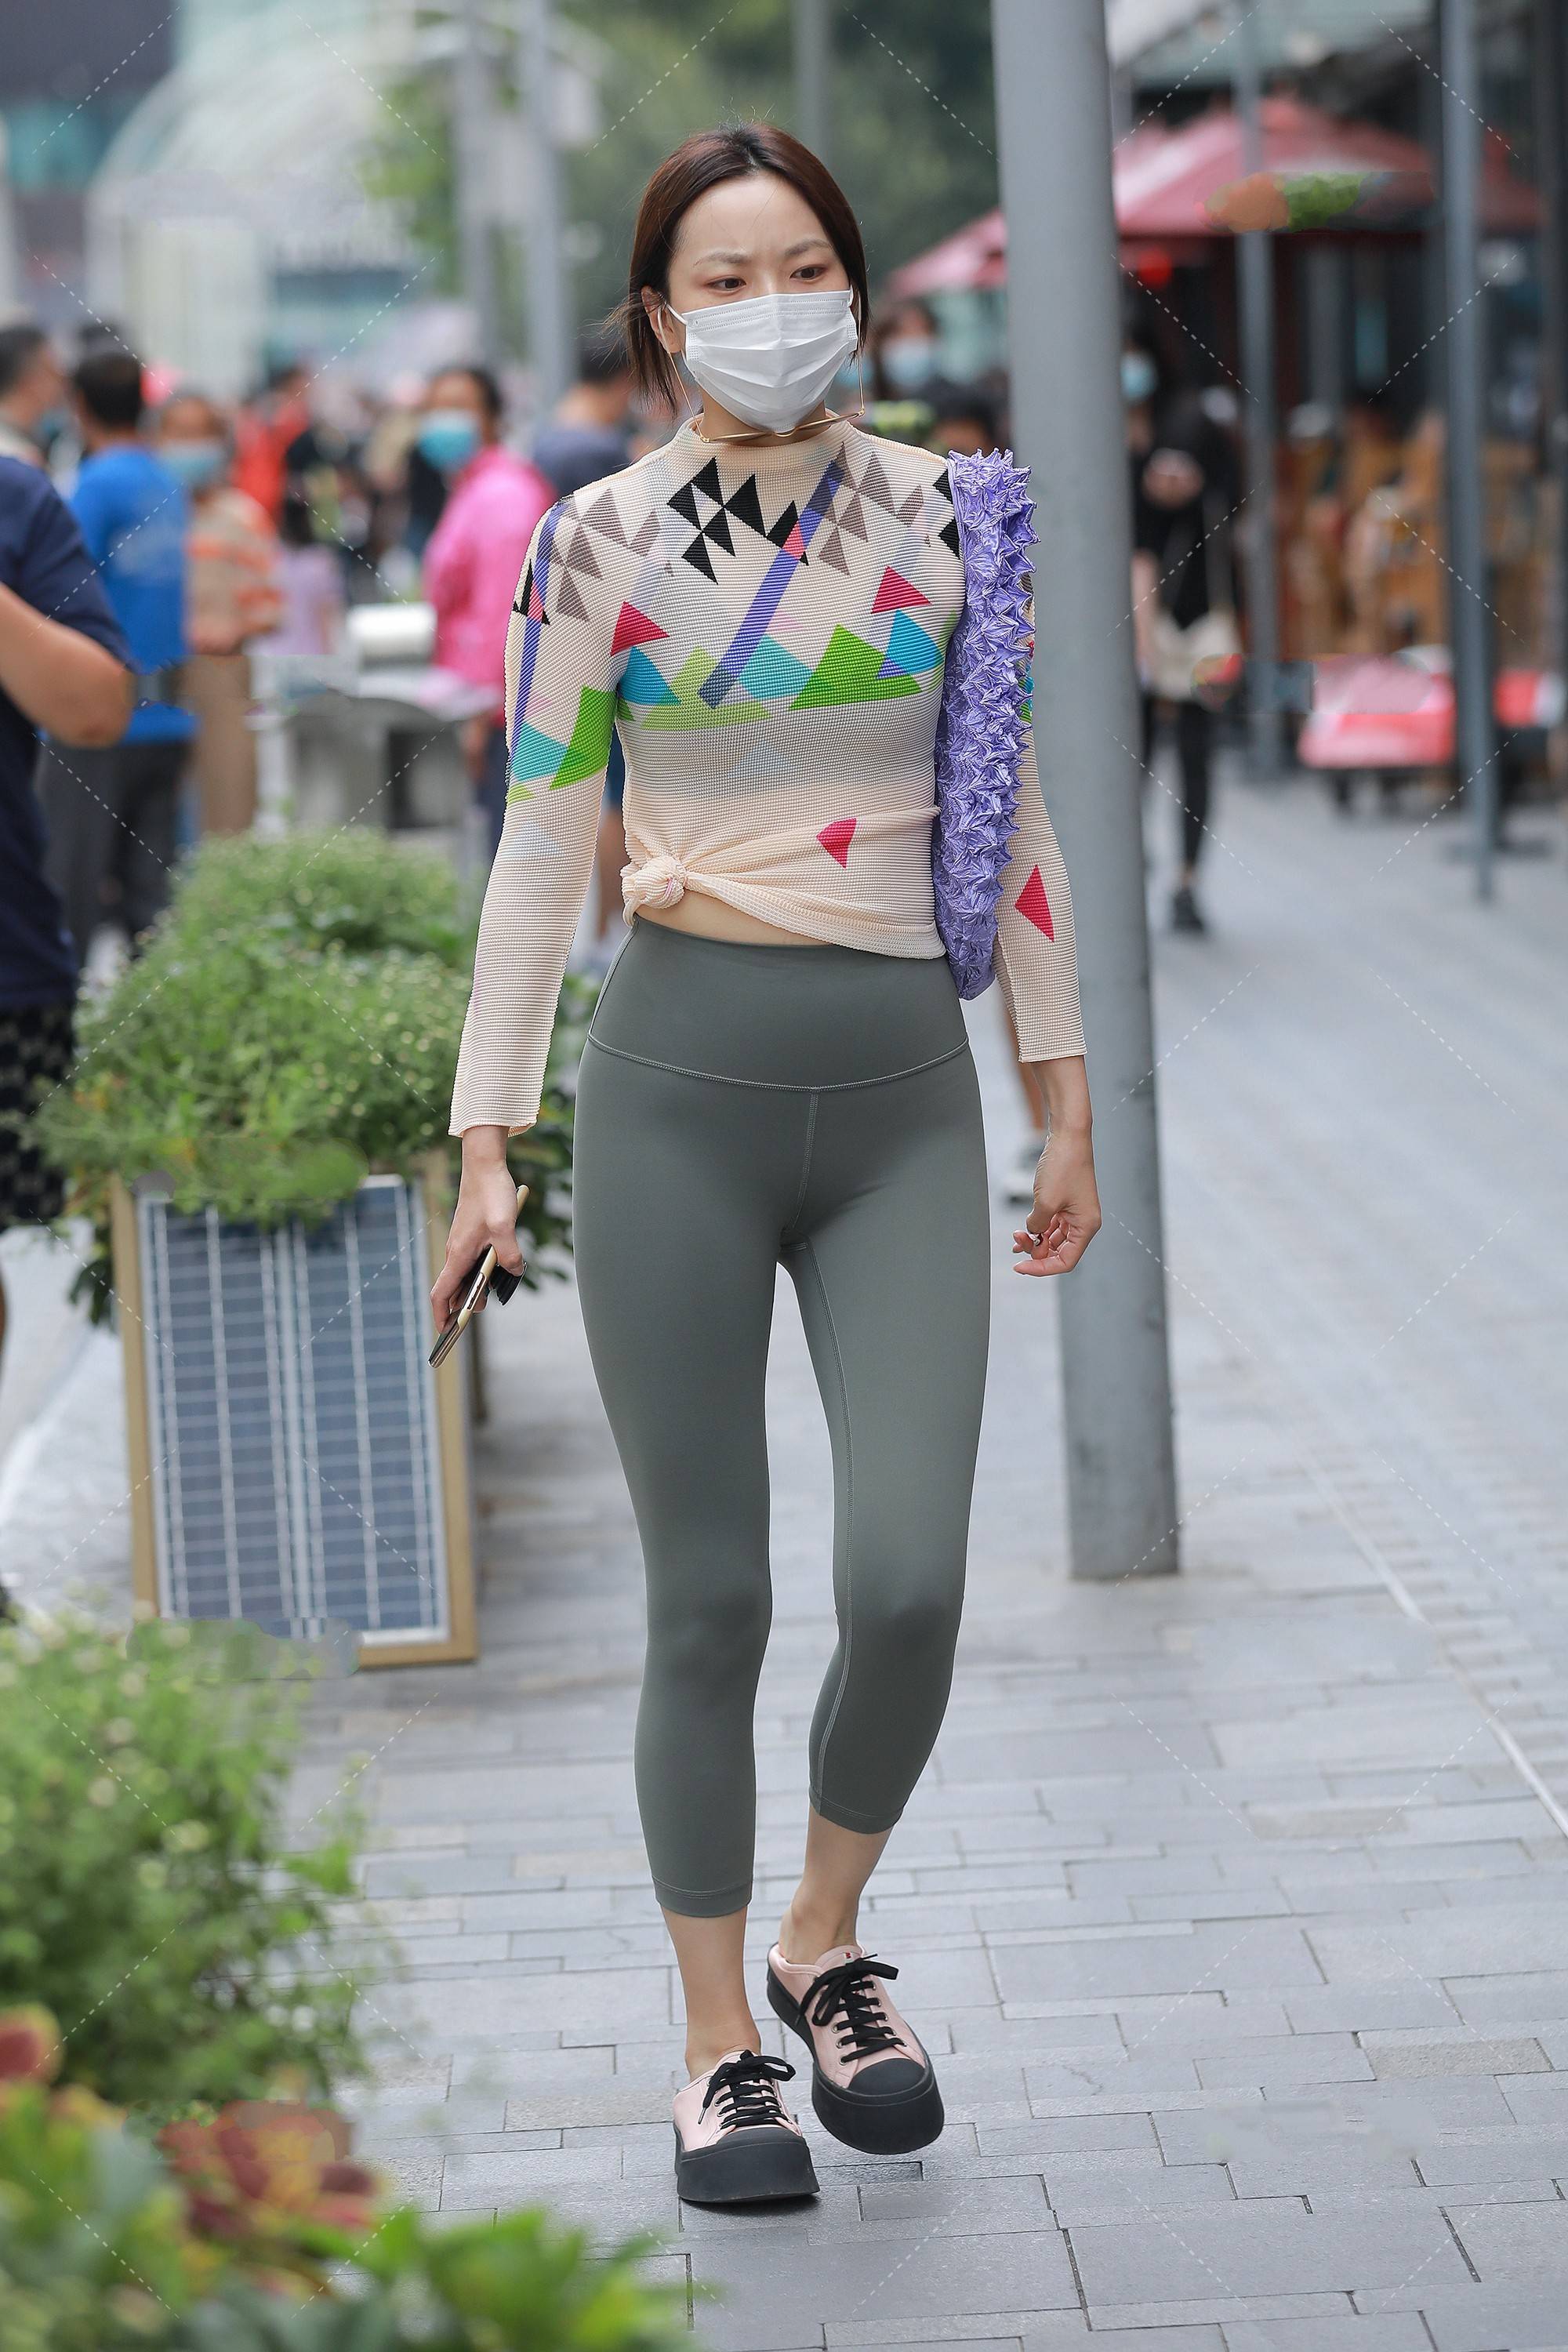 美女街拍:几何元素上衣搭配紧身运动裤,潮流先锋,时尚气质不可挡